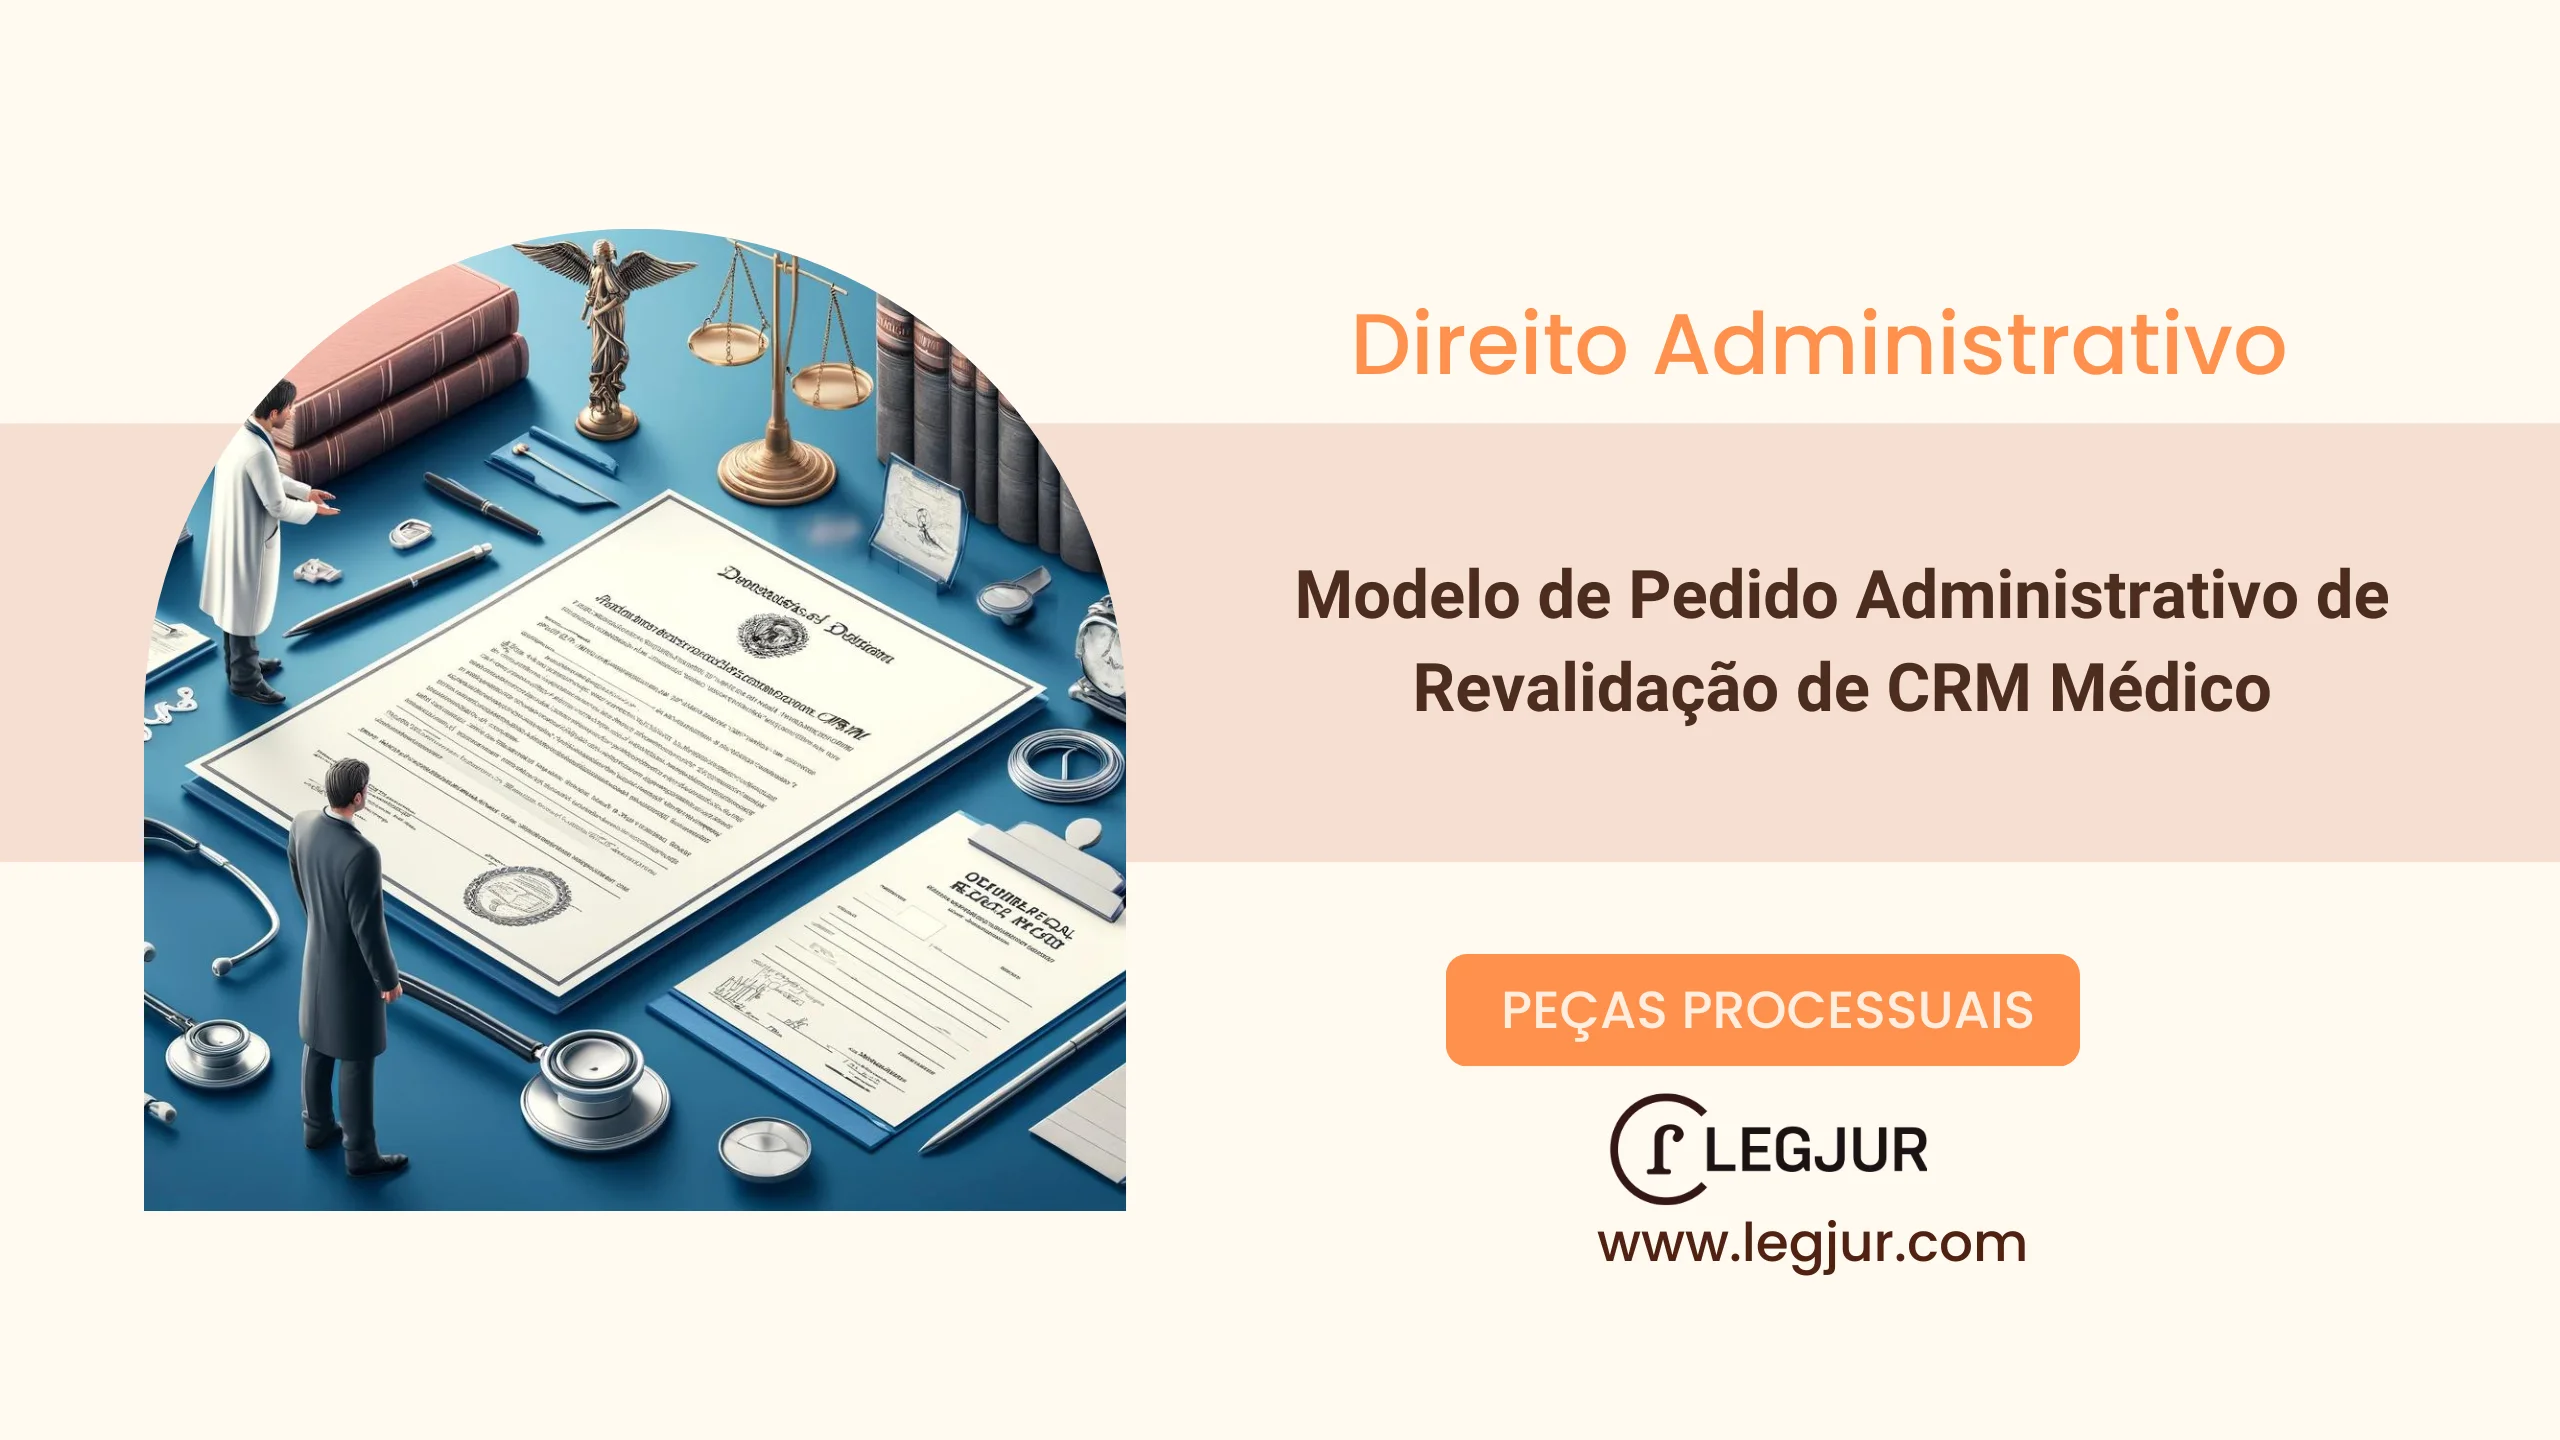 Modelo de Pedido Administrativo de Revalidação de CRM Médico